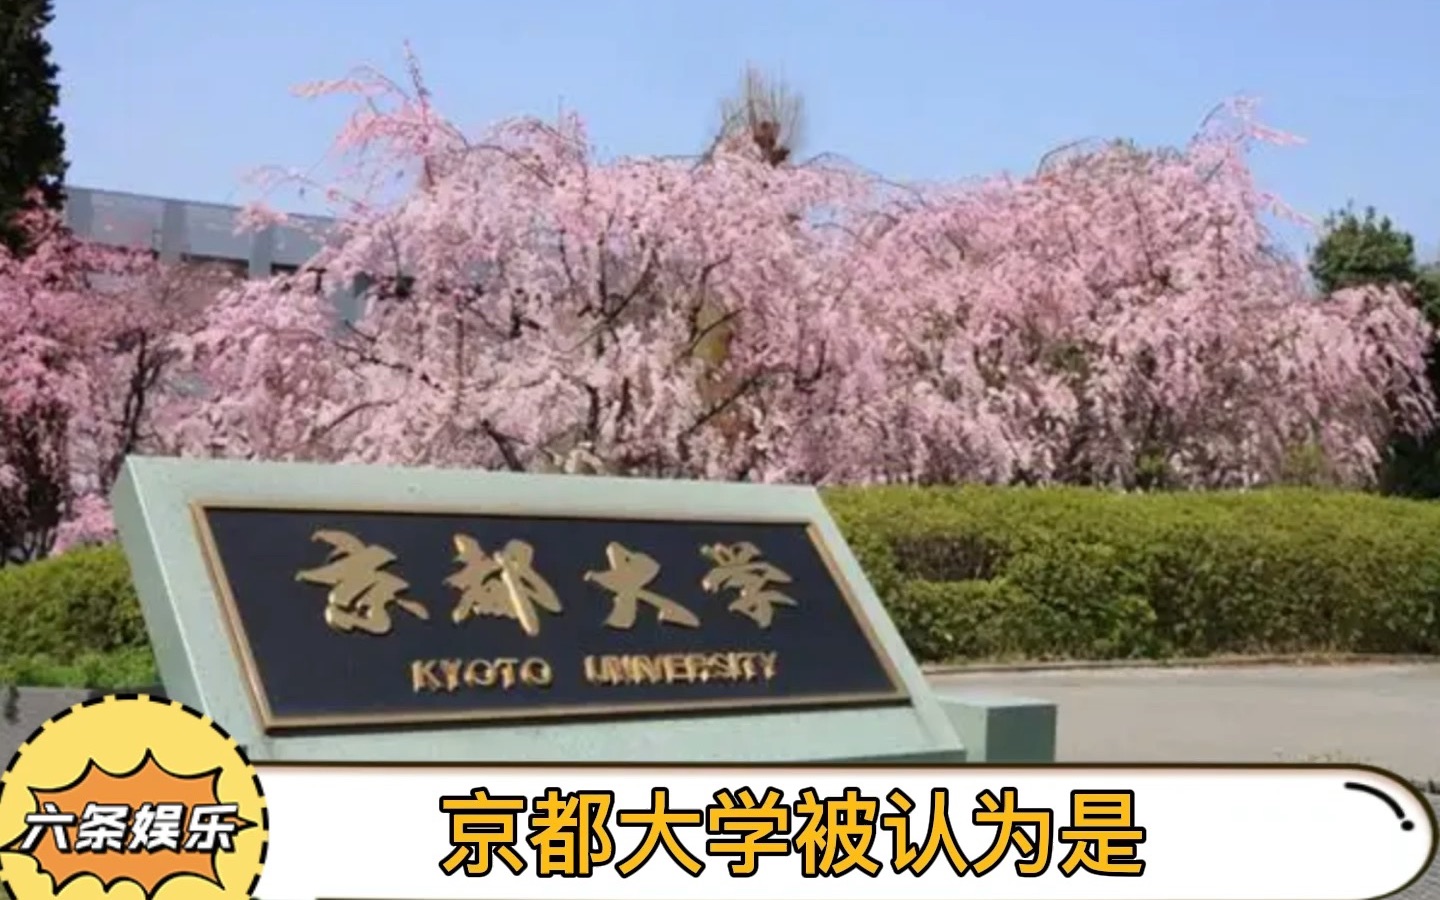 京都大学，公认的最严肃的大学之一，看看人家